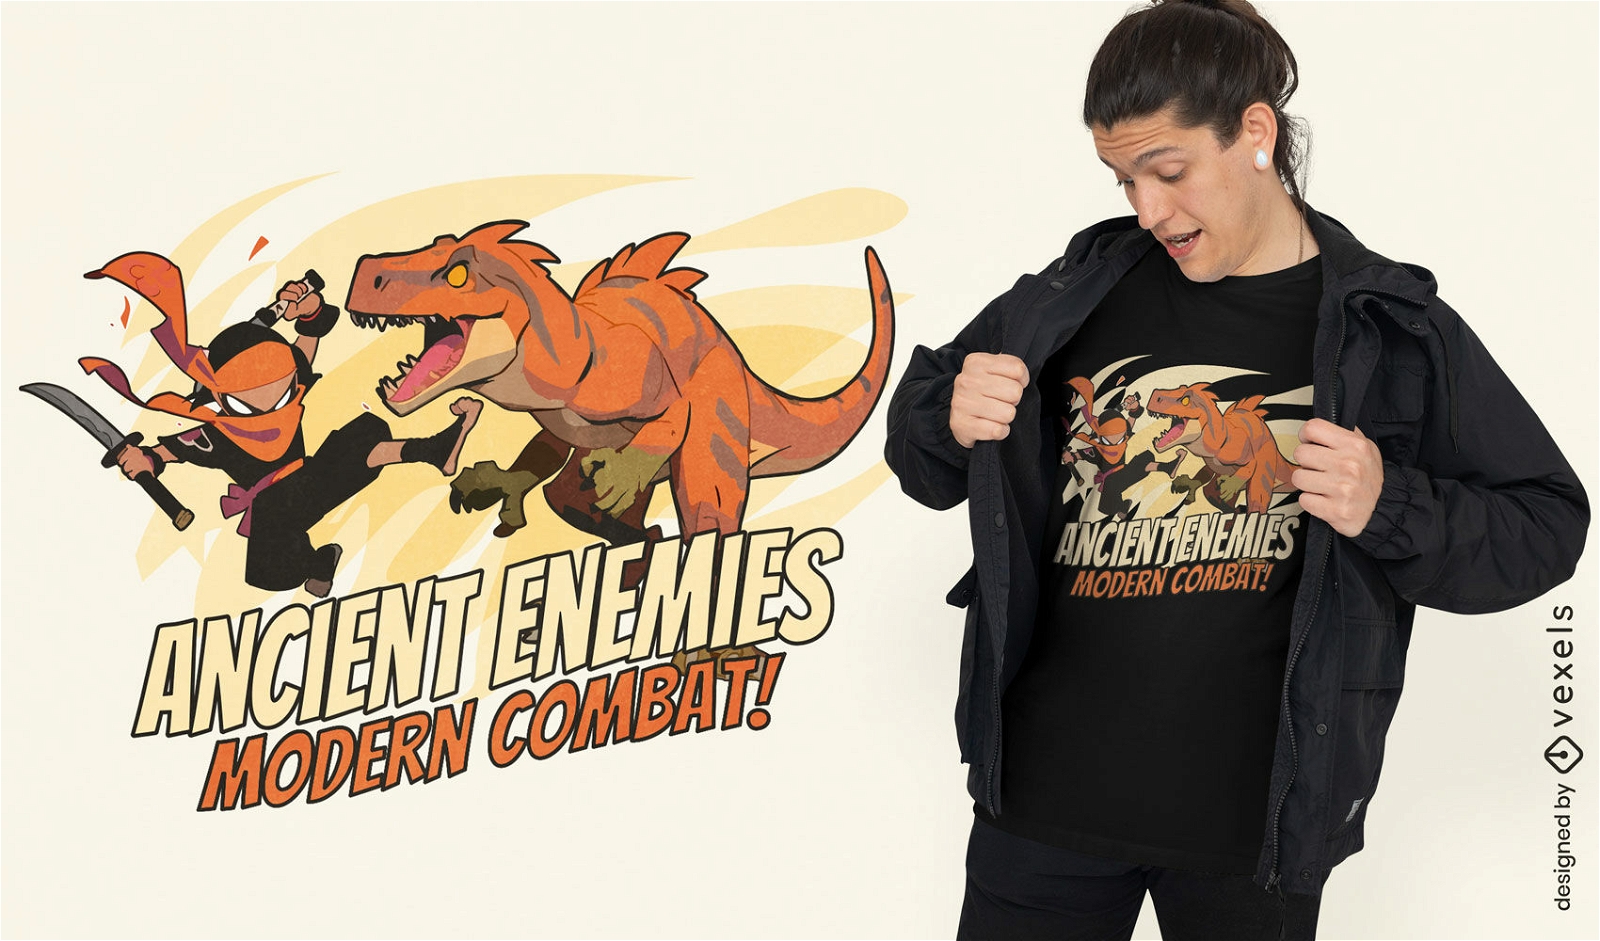 Dise?o de camiseta de lucha de ninjas y dinosaurios.